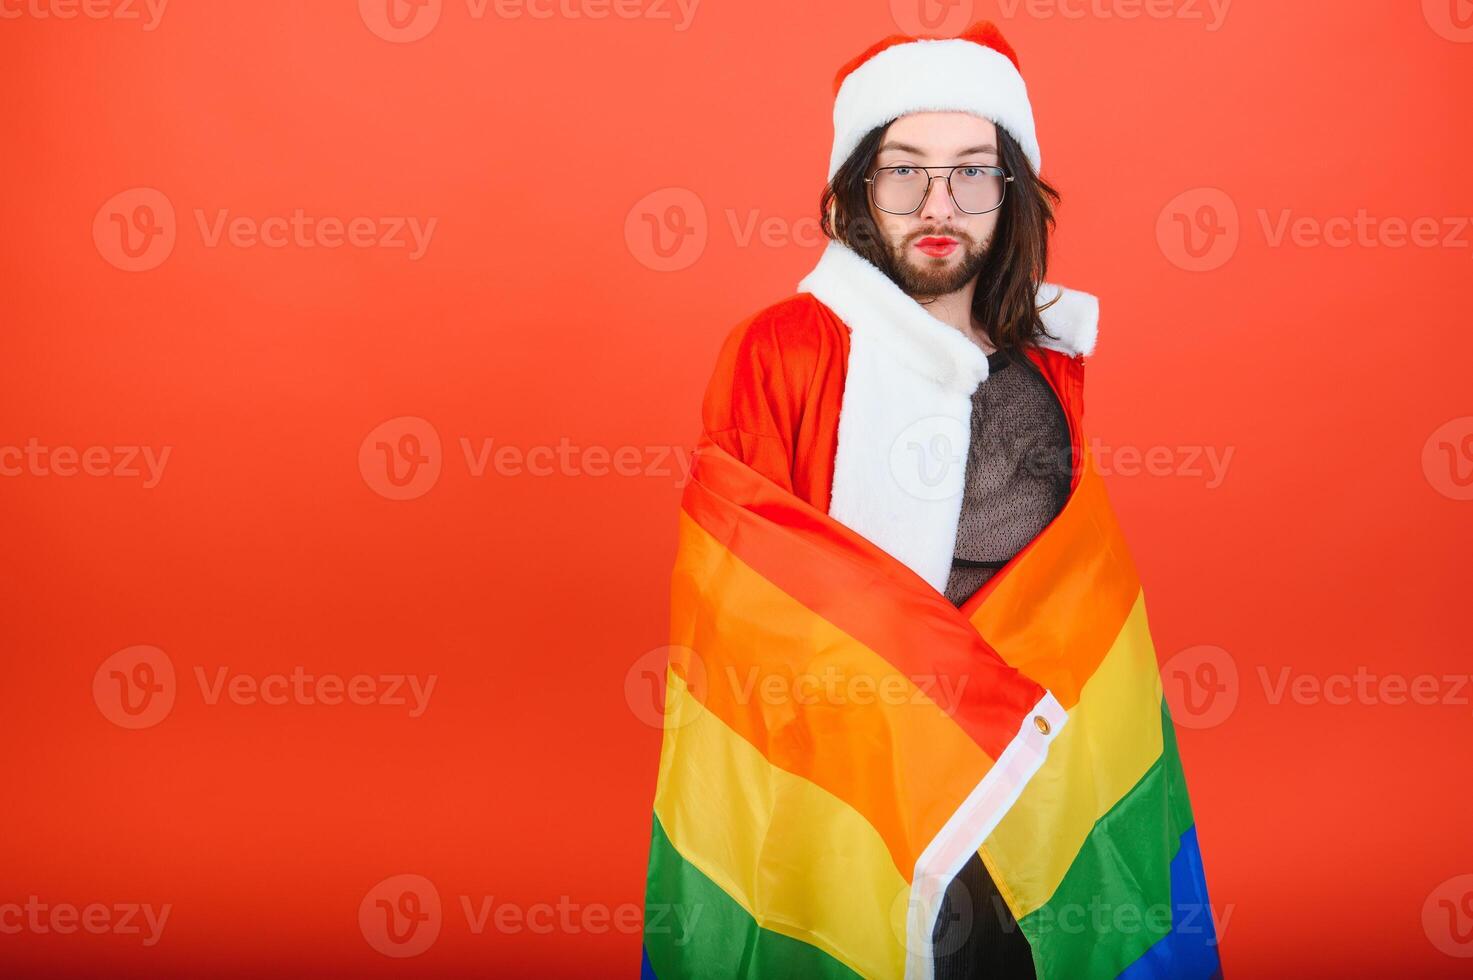 gay hombre vestido como Papa Noel claus participación un multicolor bandera foto